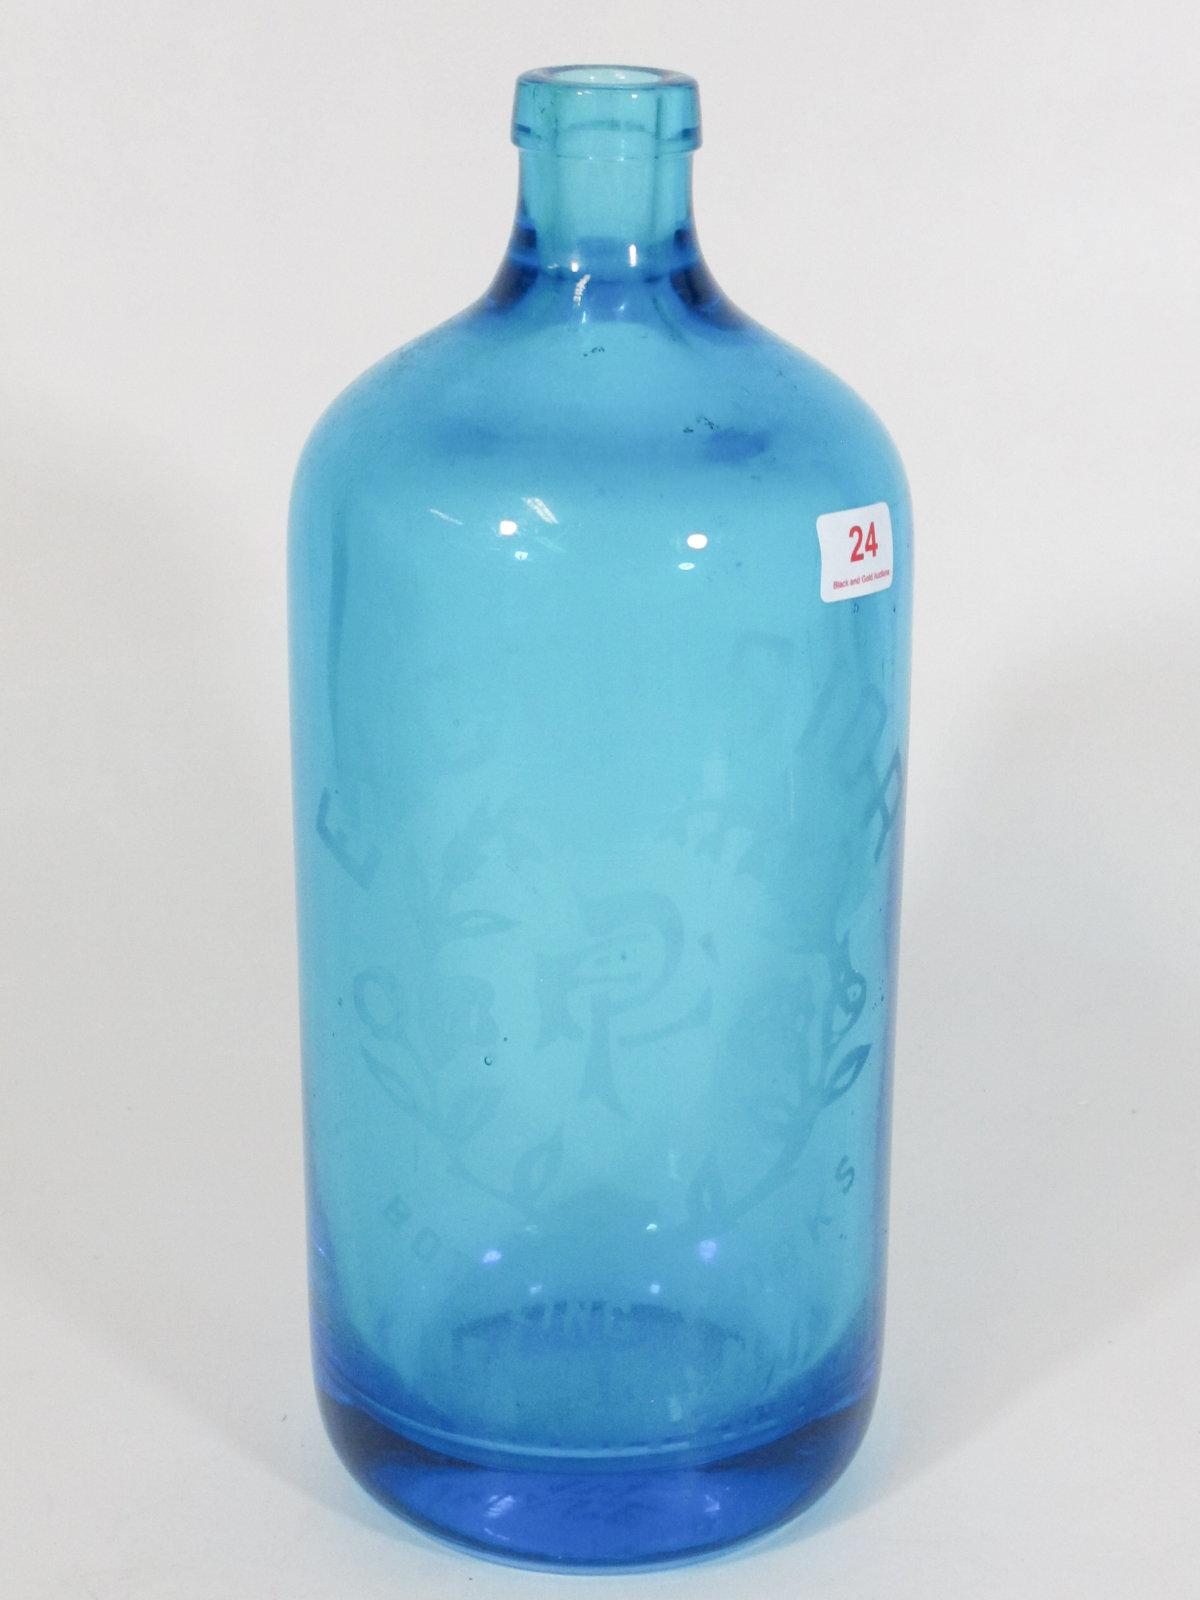 9" Blue Excelsior Bottle, Newark NJ